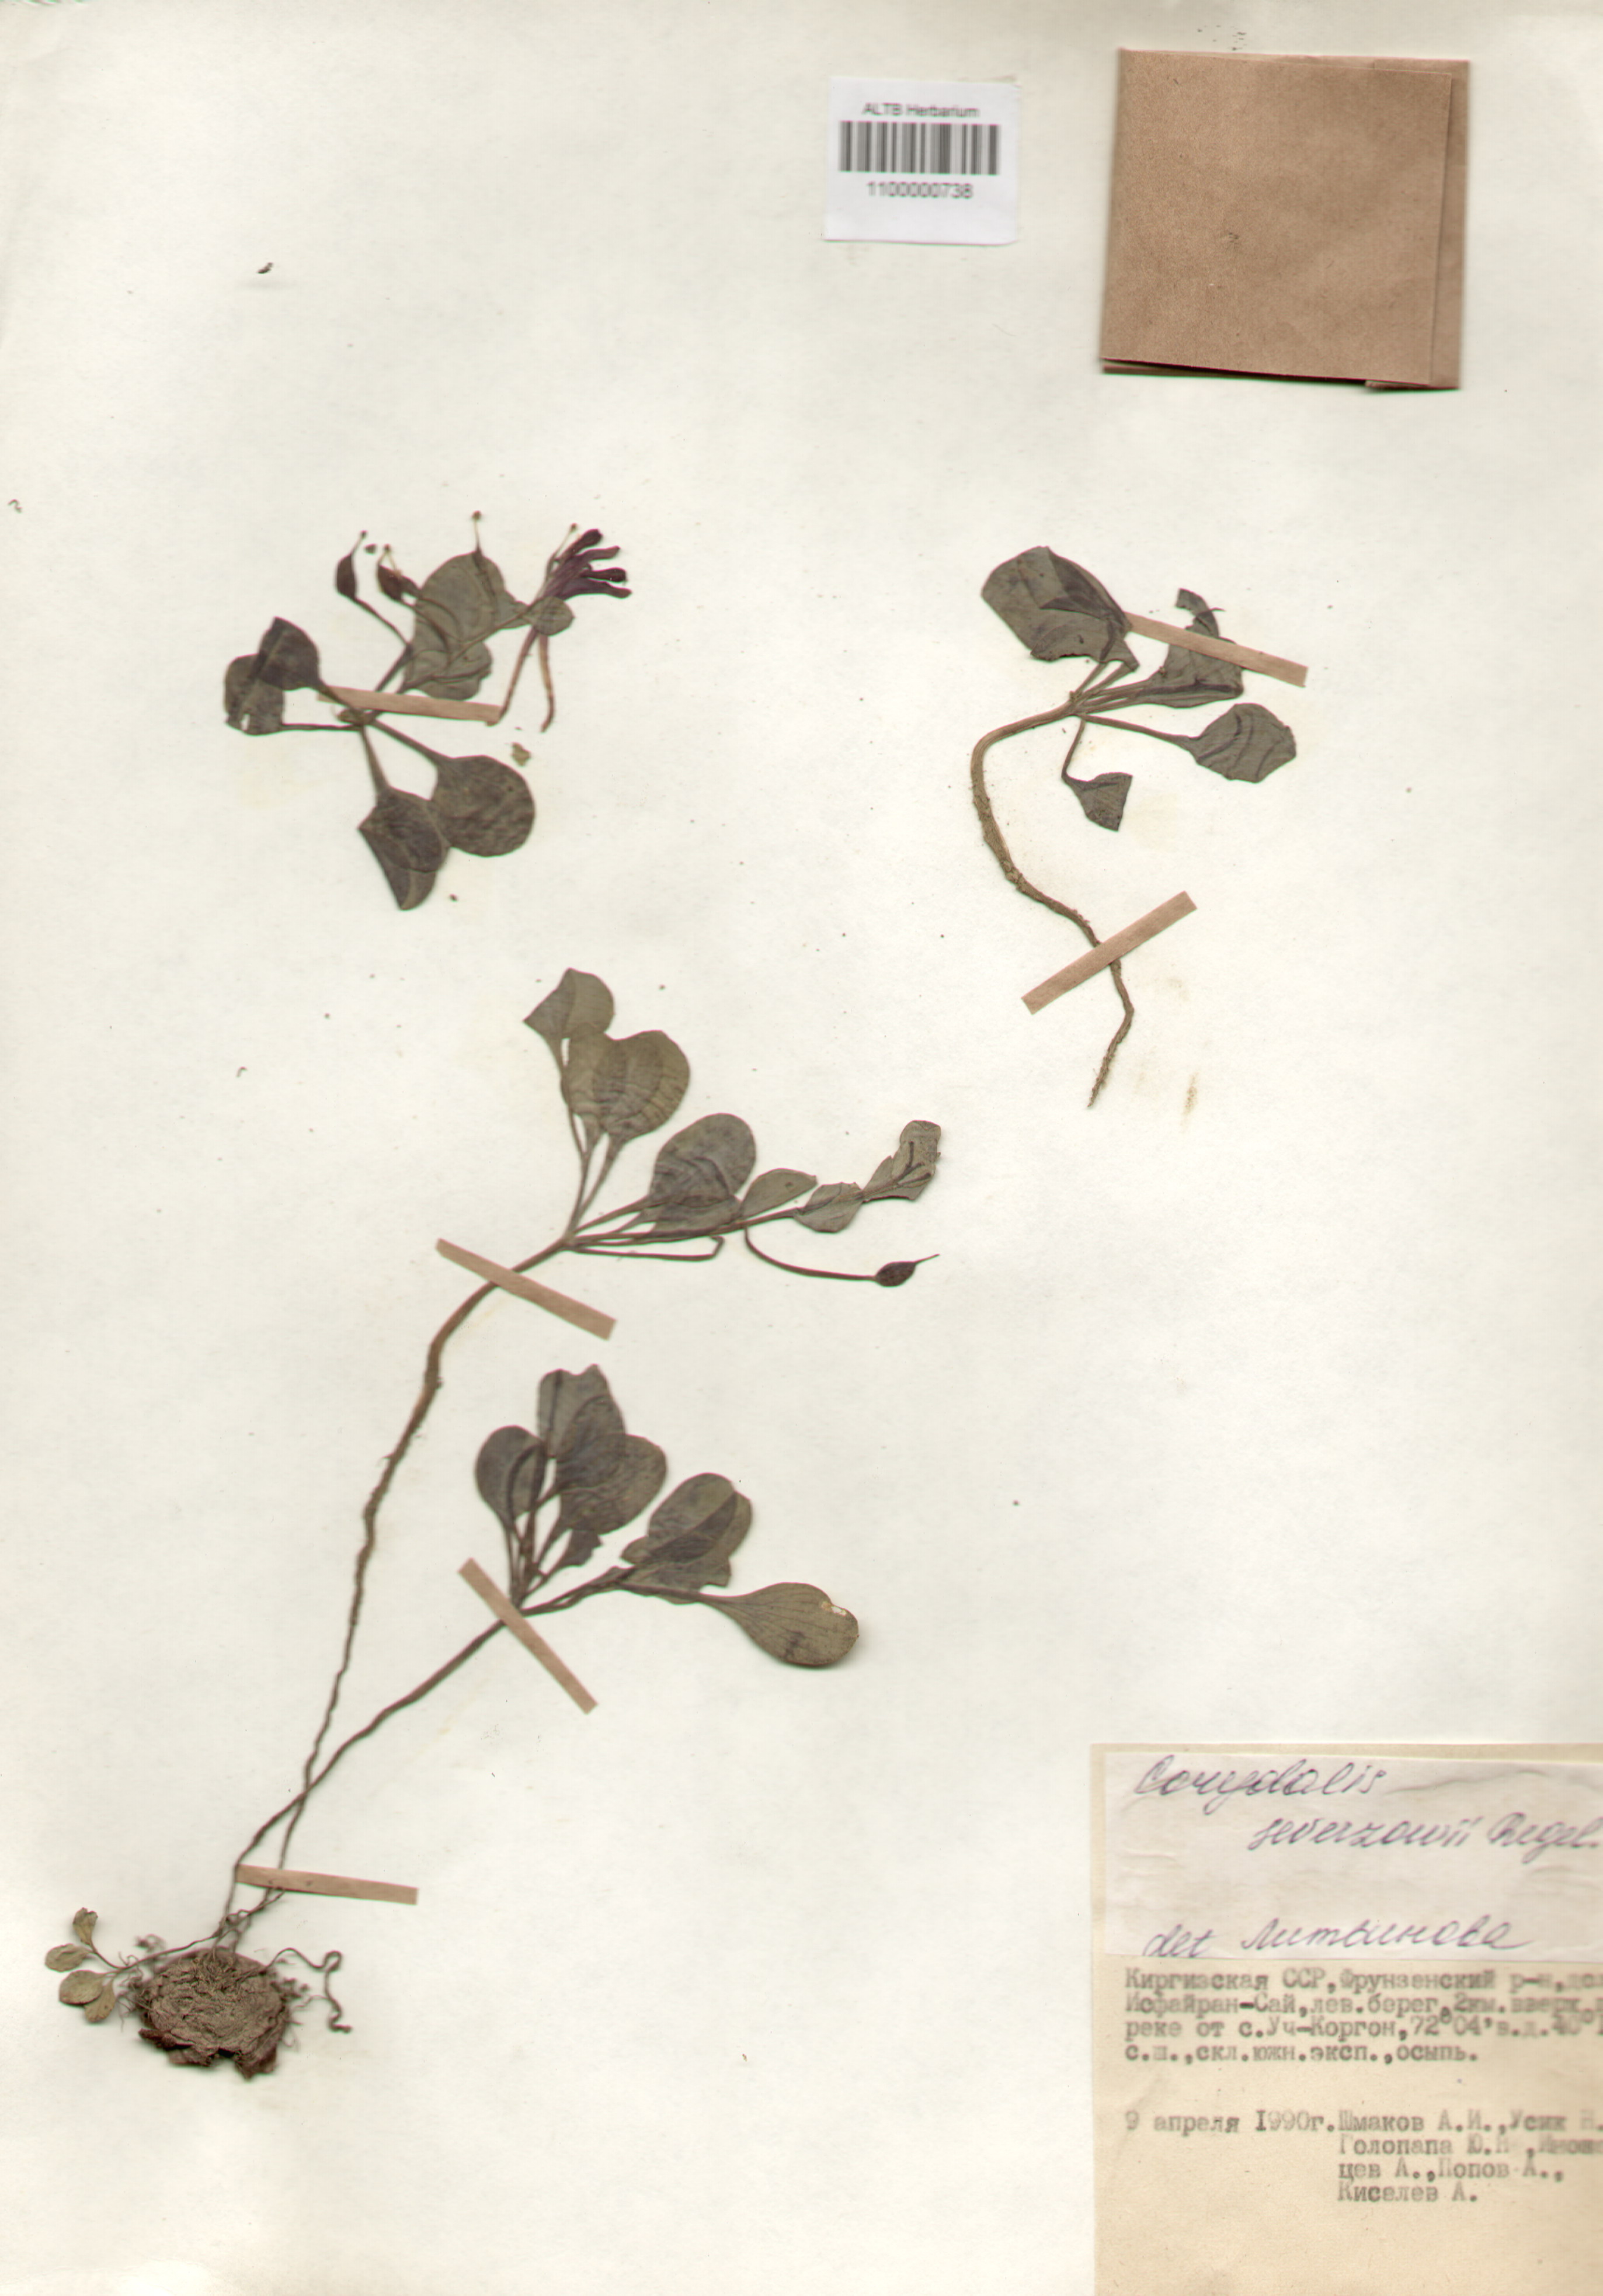 Fumariaceae,Corydalis sewerzowii Regel.